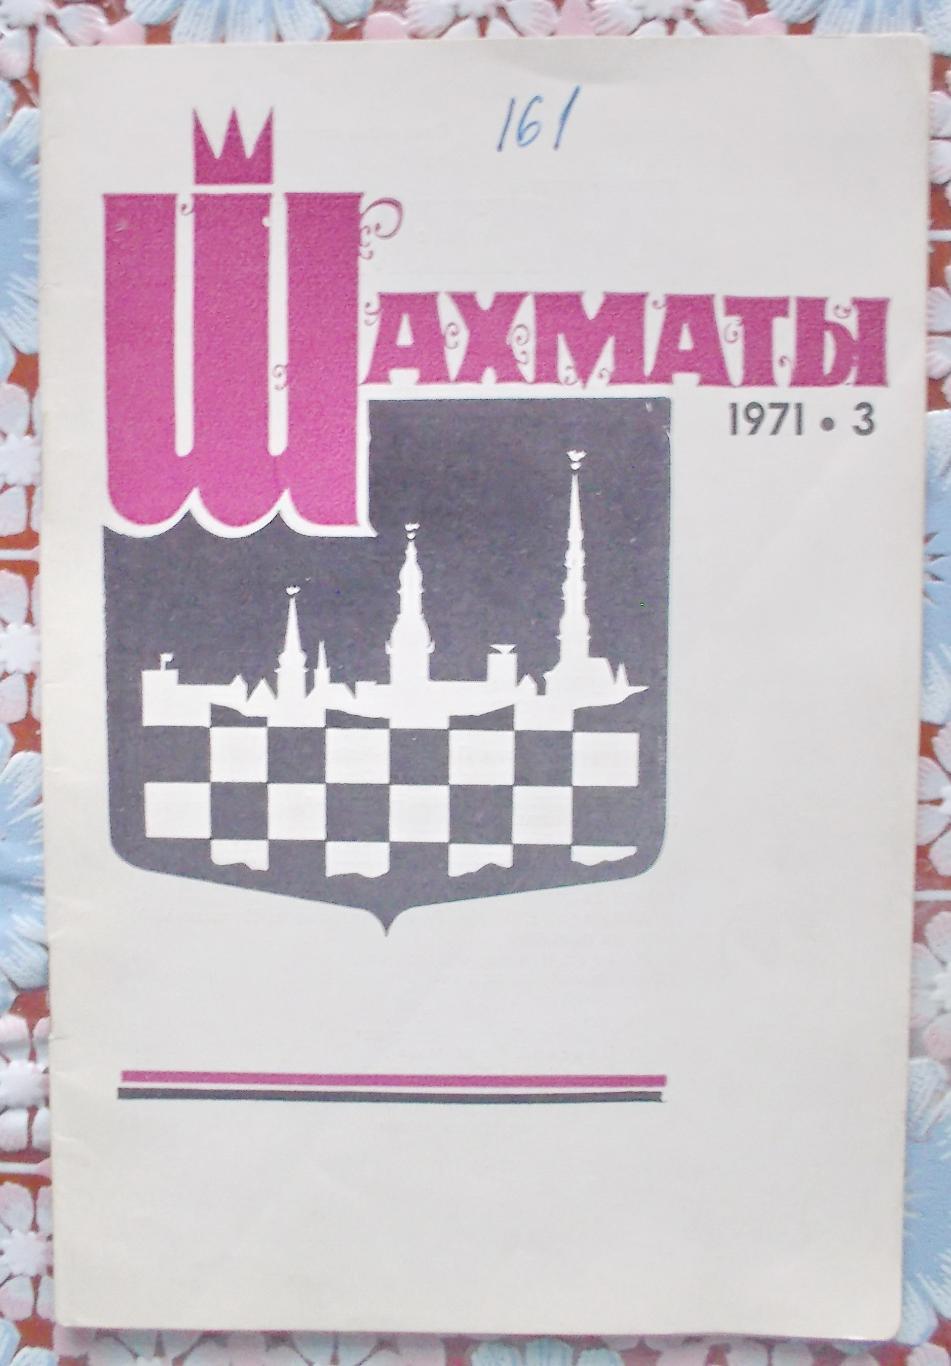 Журнал Шахматы, №3, 1971 год.